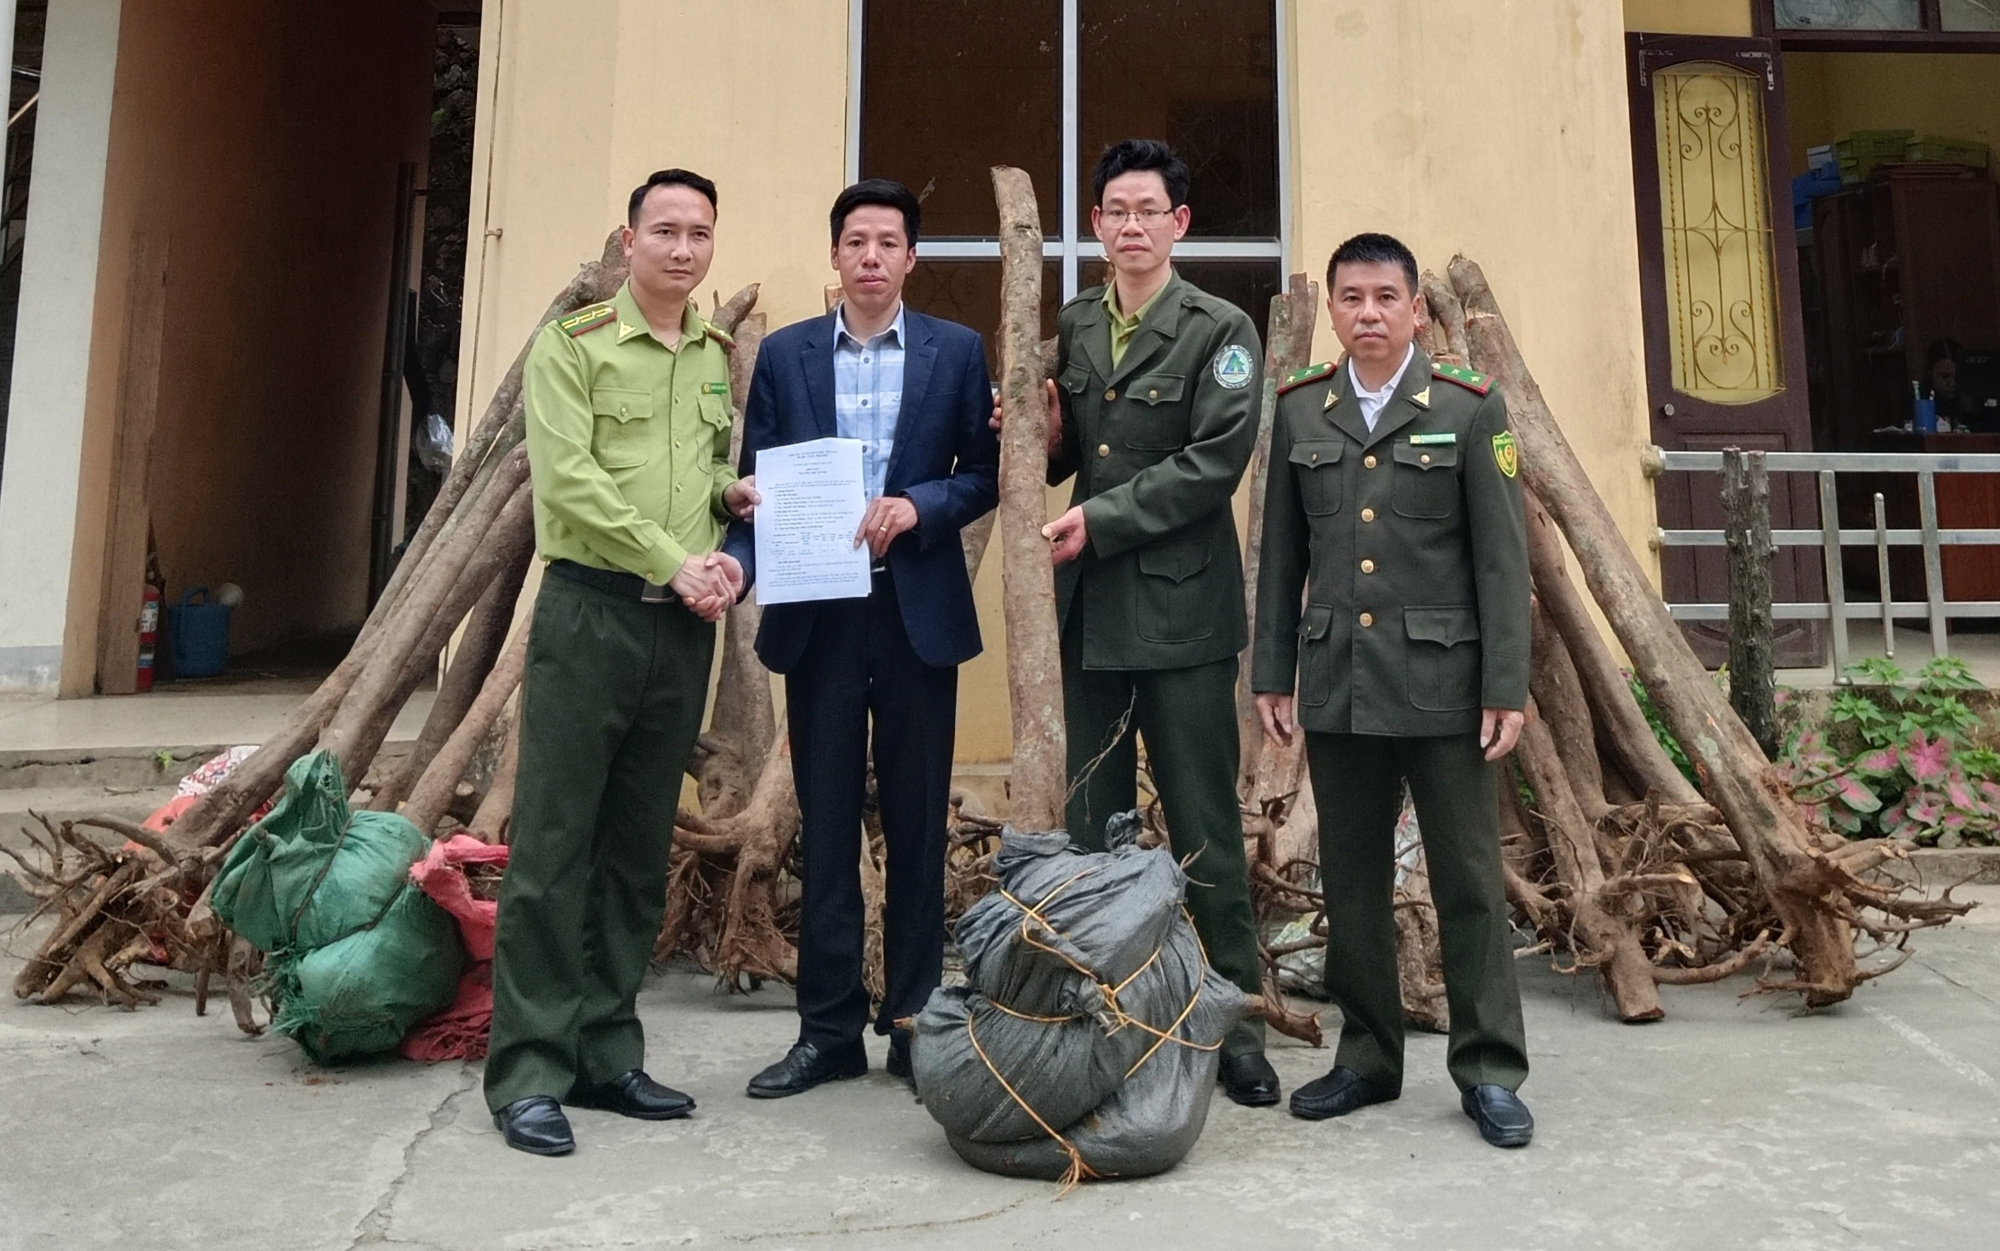 Hạt kiểm lâm huyện Văn Bàn (Lào Cai) bàn giao 39 cây mẫu đơn rừng cho Trung tâm cứu hộ, bảo tồn và phát triển sinh vật Hoàng Liên. Ảnh: PNT.